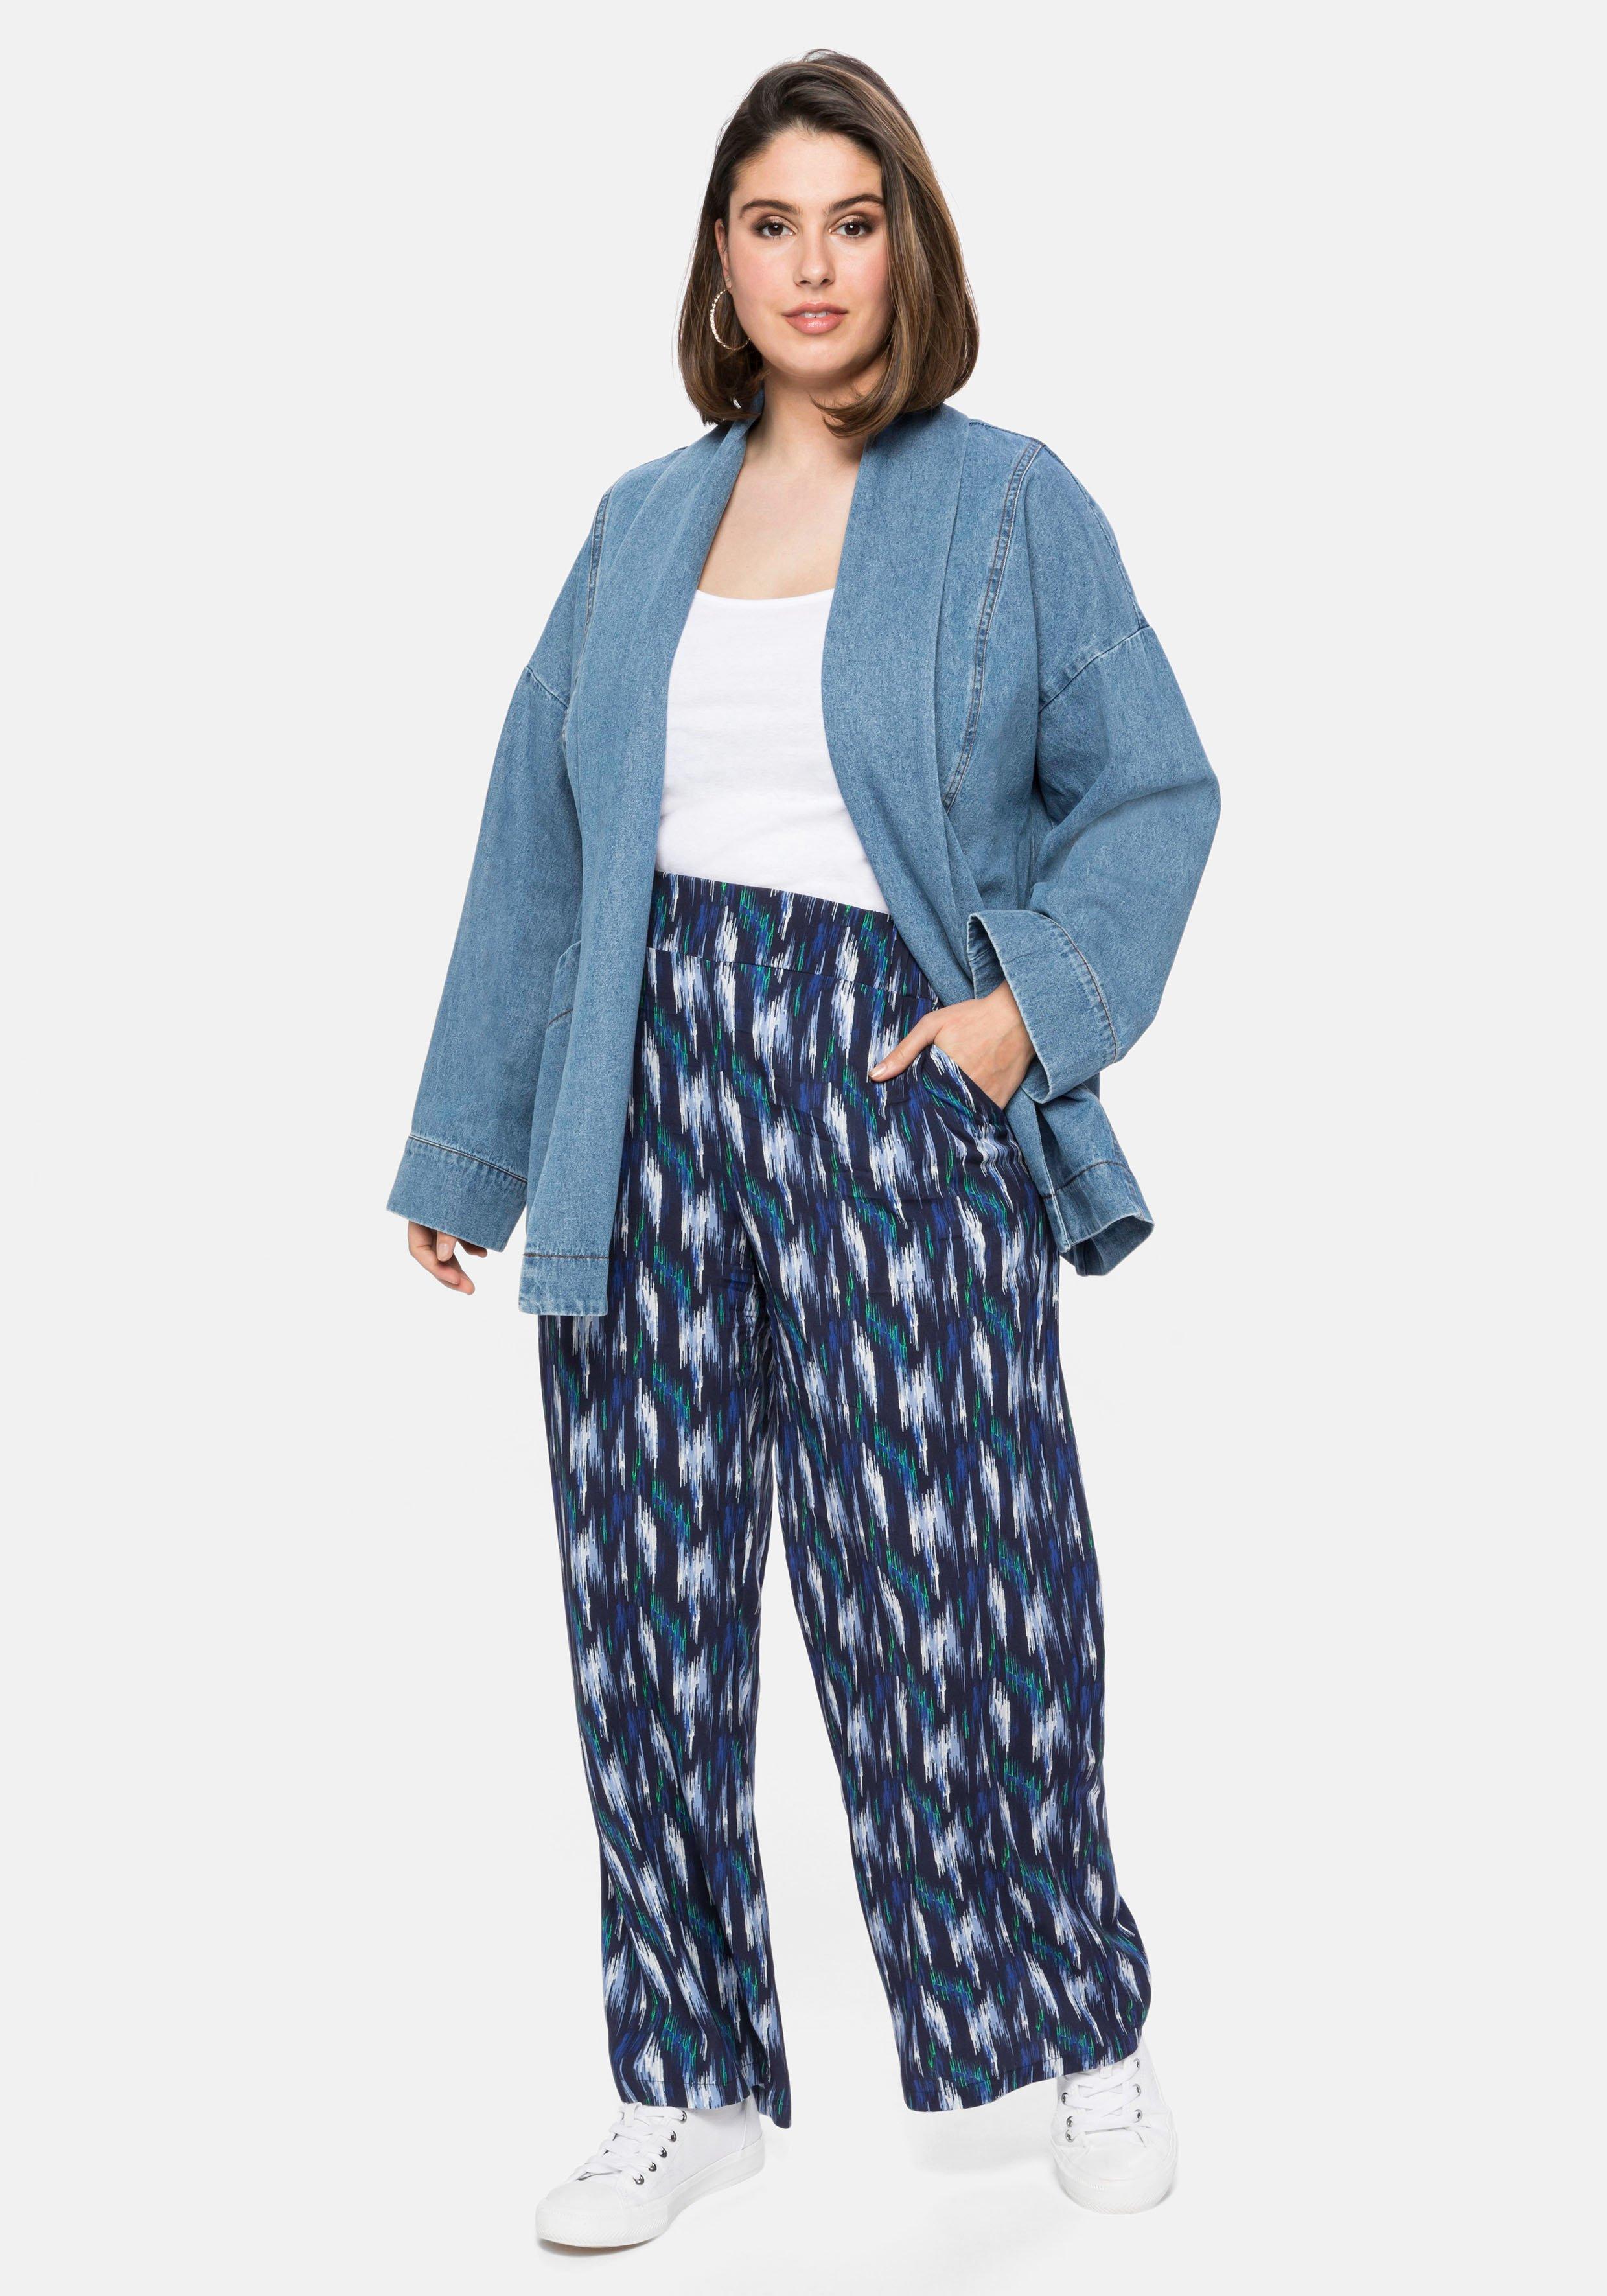 Jeansjacke mit Schalkragen, in Kimono-Form - | Denim sheego blue